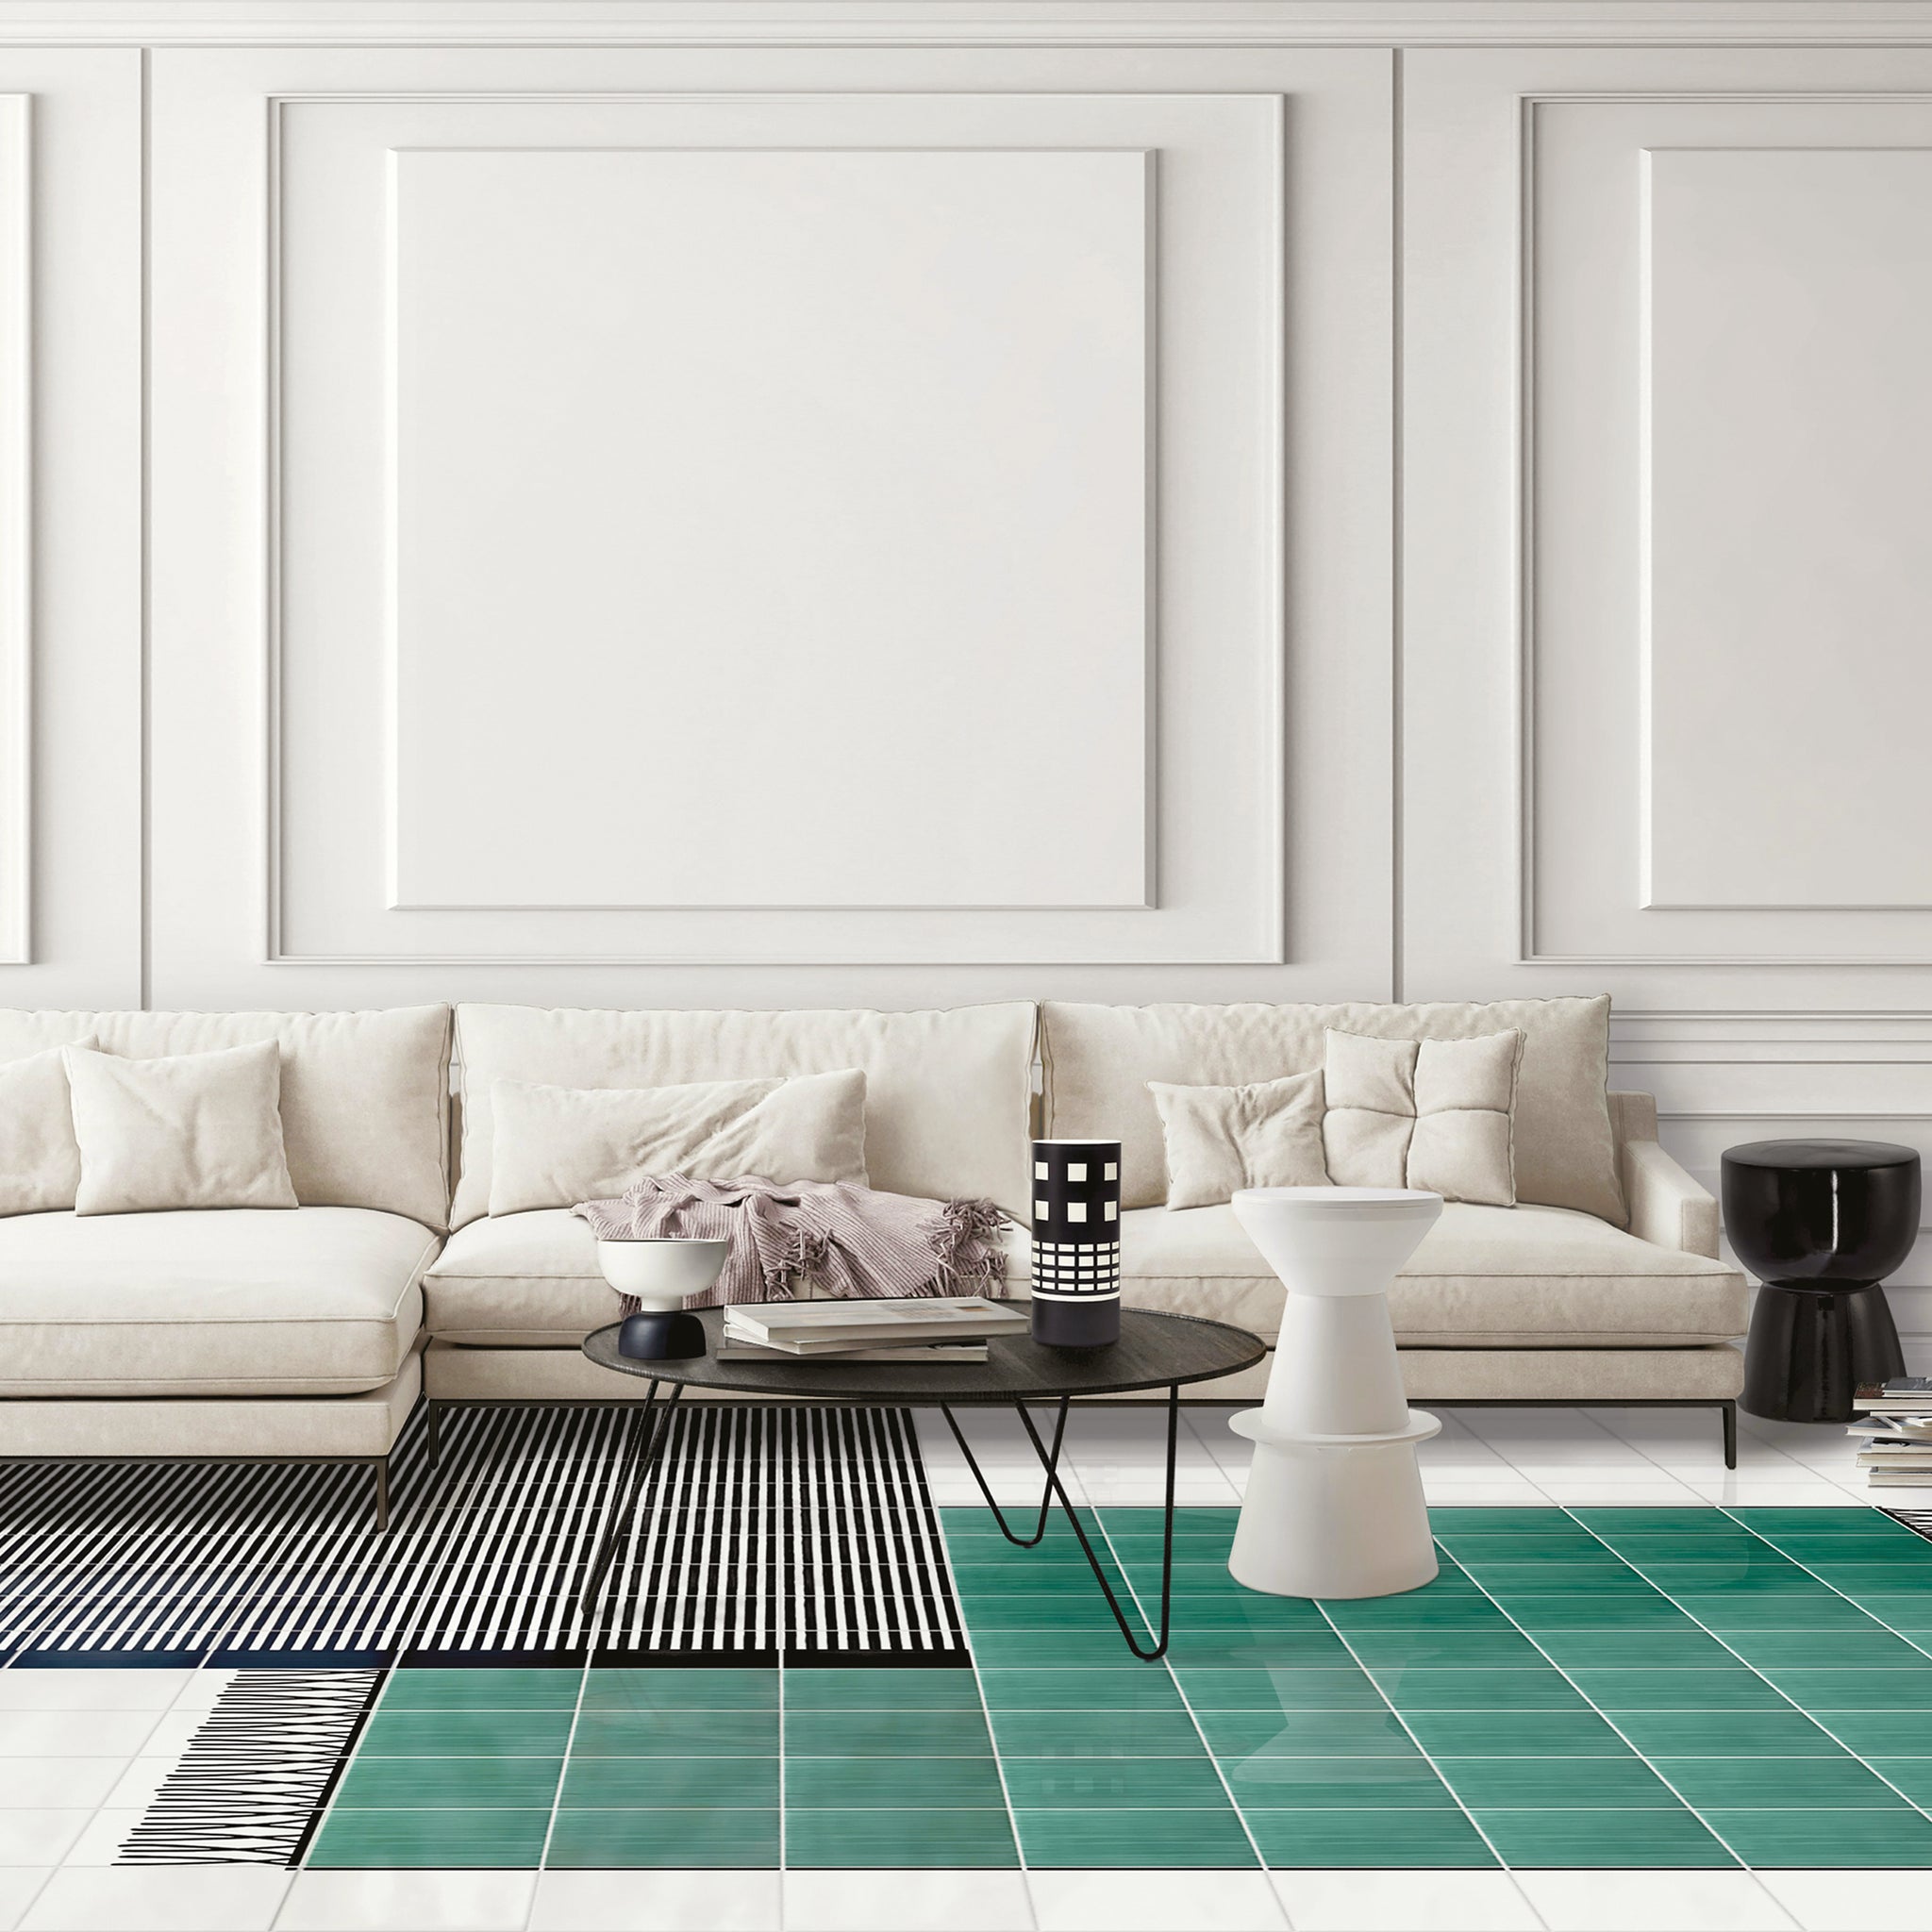 Carpet Total Green Ceramic Composition by Giuliano Andrea dell’Uva 120 X 80 with black border - Alternative view 1